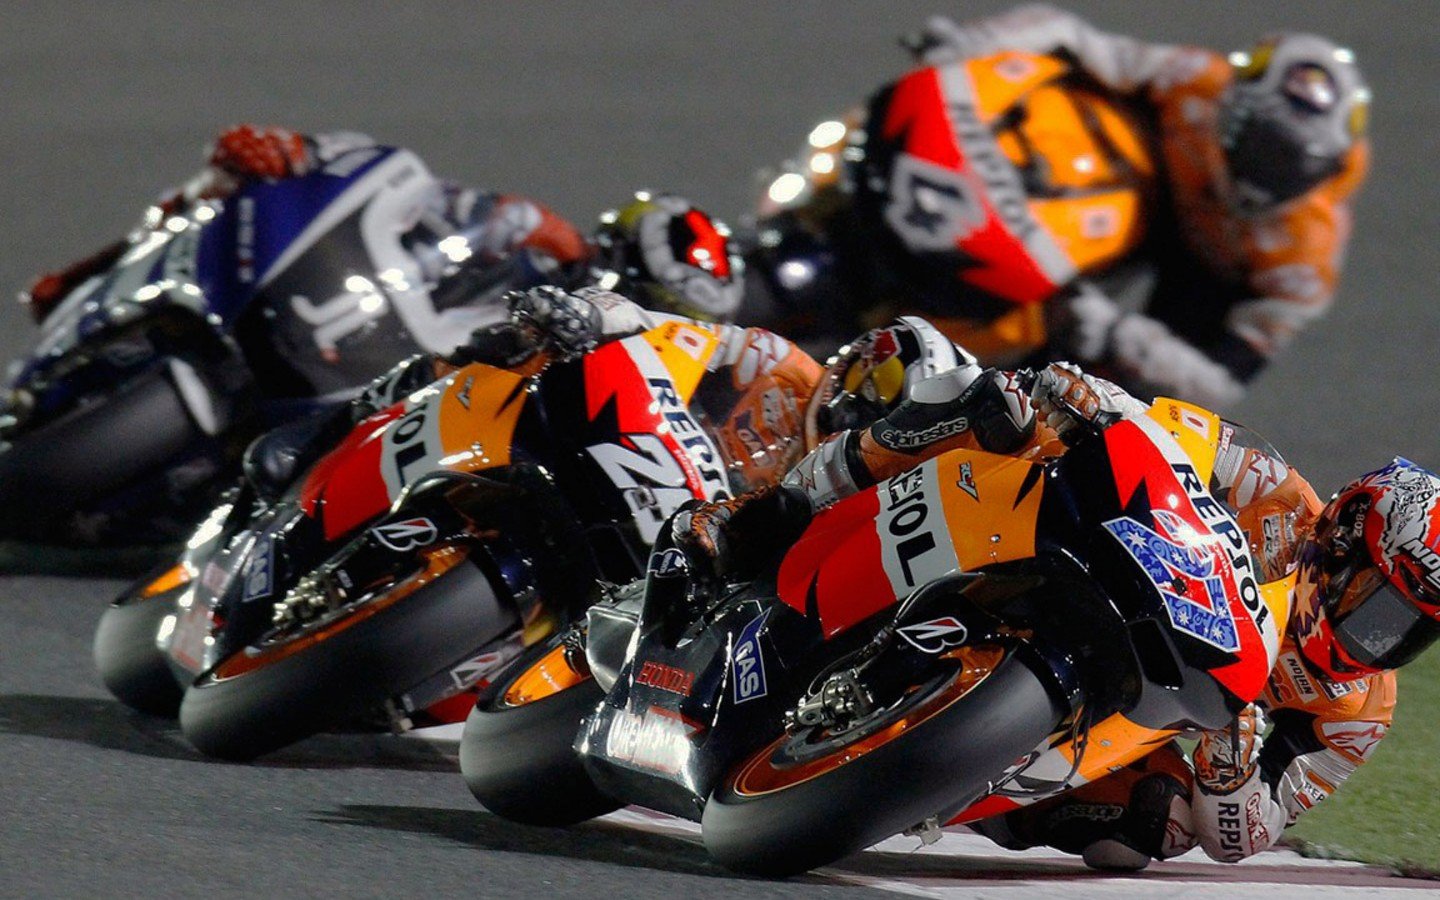 MotoGP 2014 Wallpaper HD Wallpapers